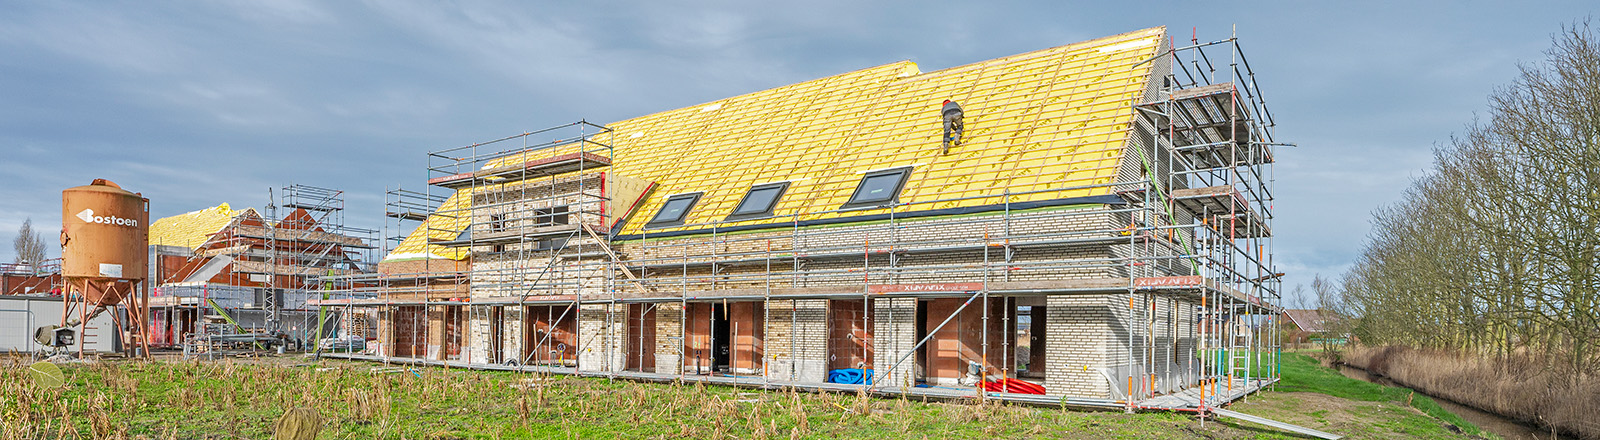 Duurzame nieuwbouwprojecten bij Bostoen sterke isolatie in muren en daken en sterke beglazing